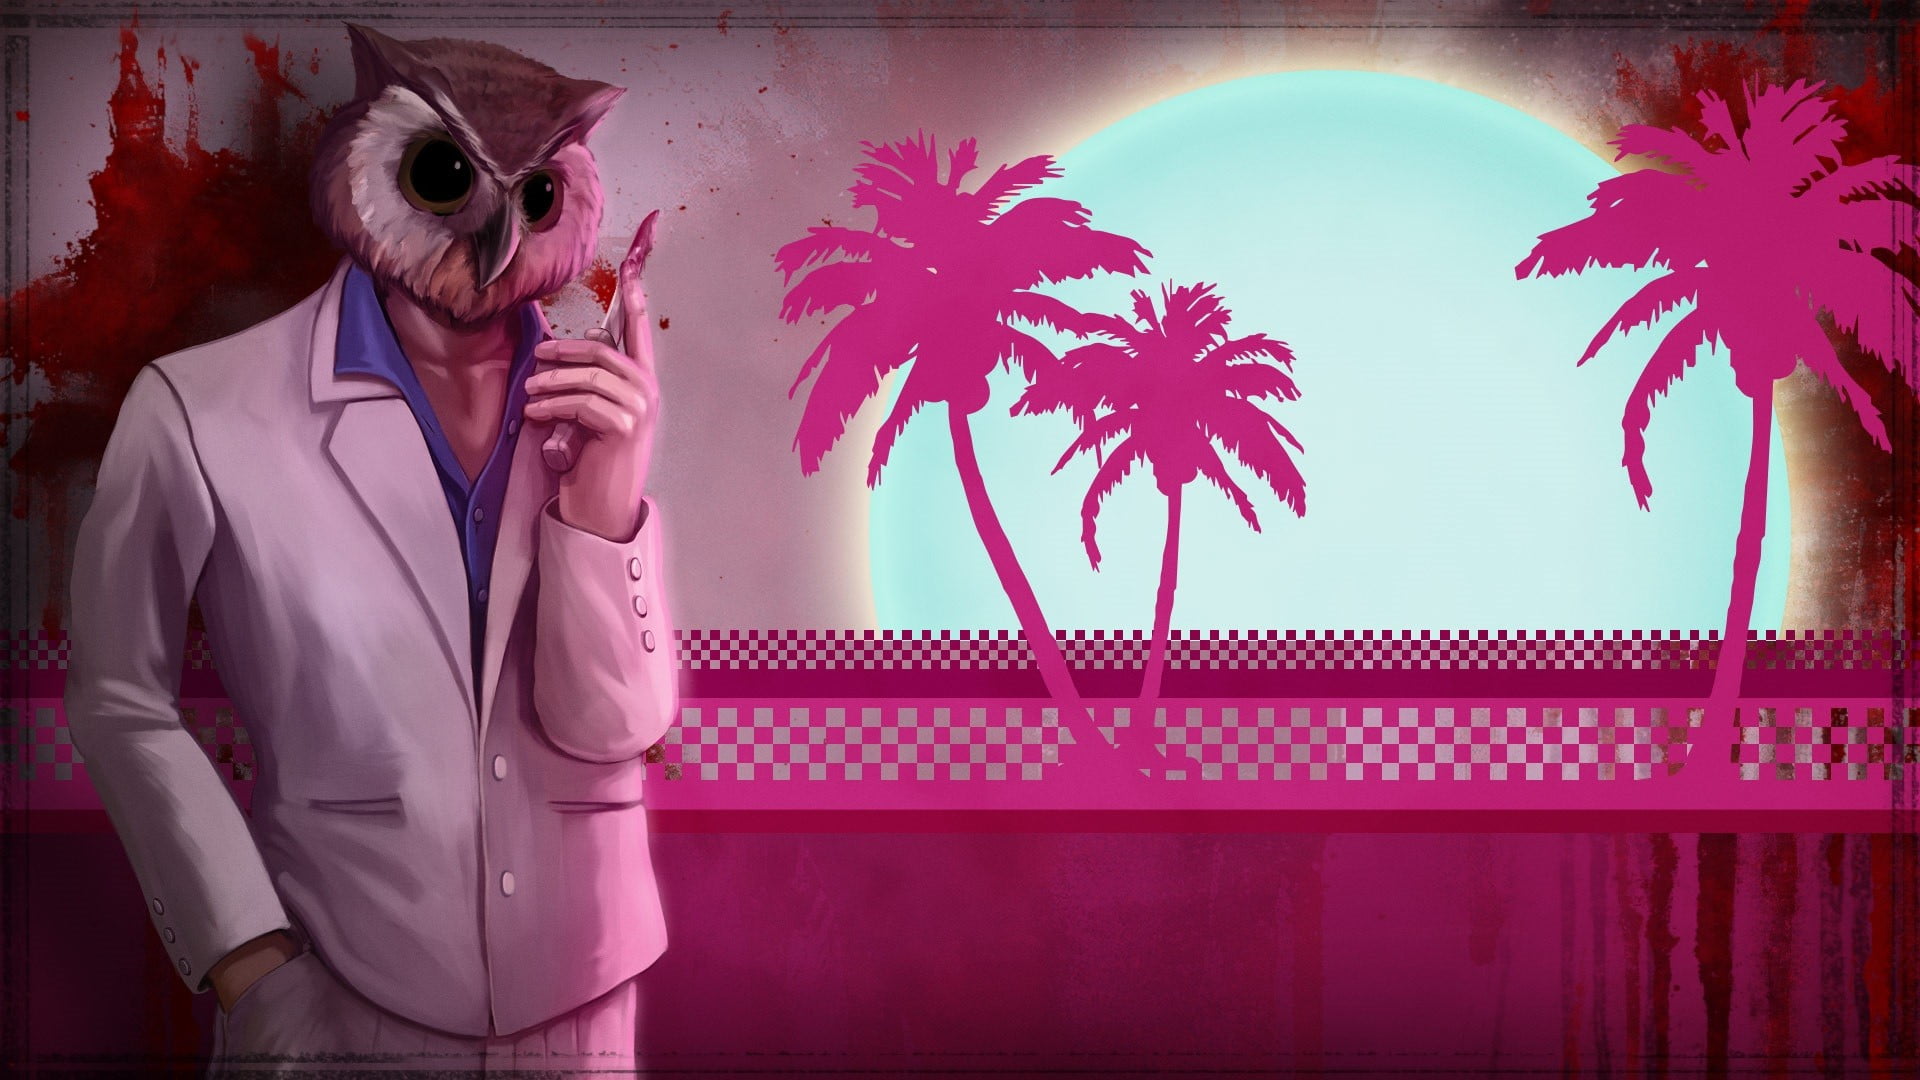 male Grand Thief Auto character wallpaper, Hotline Miami, video games